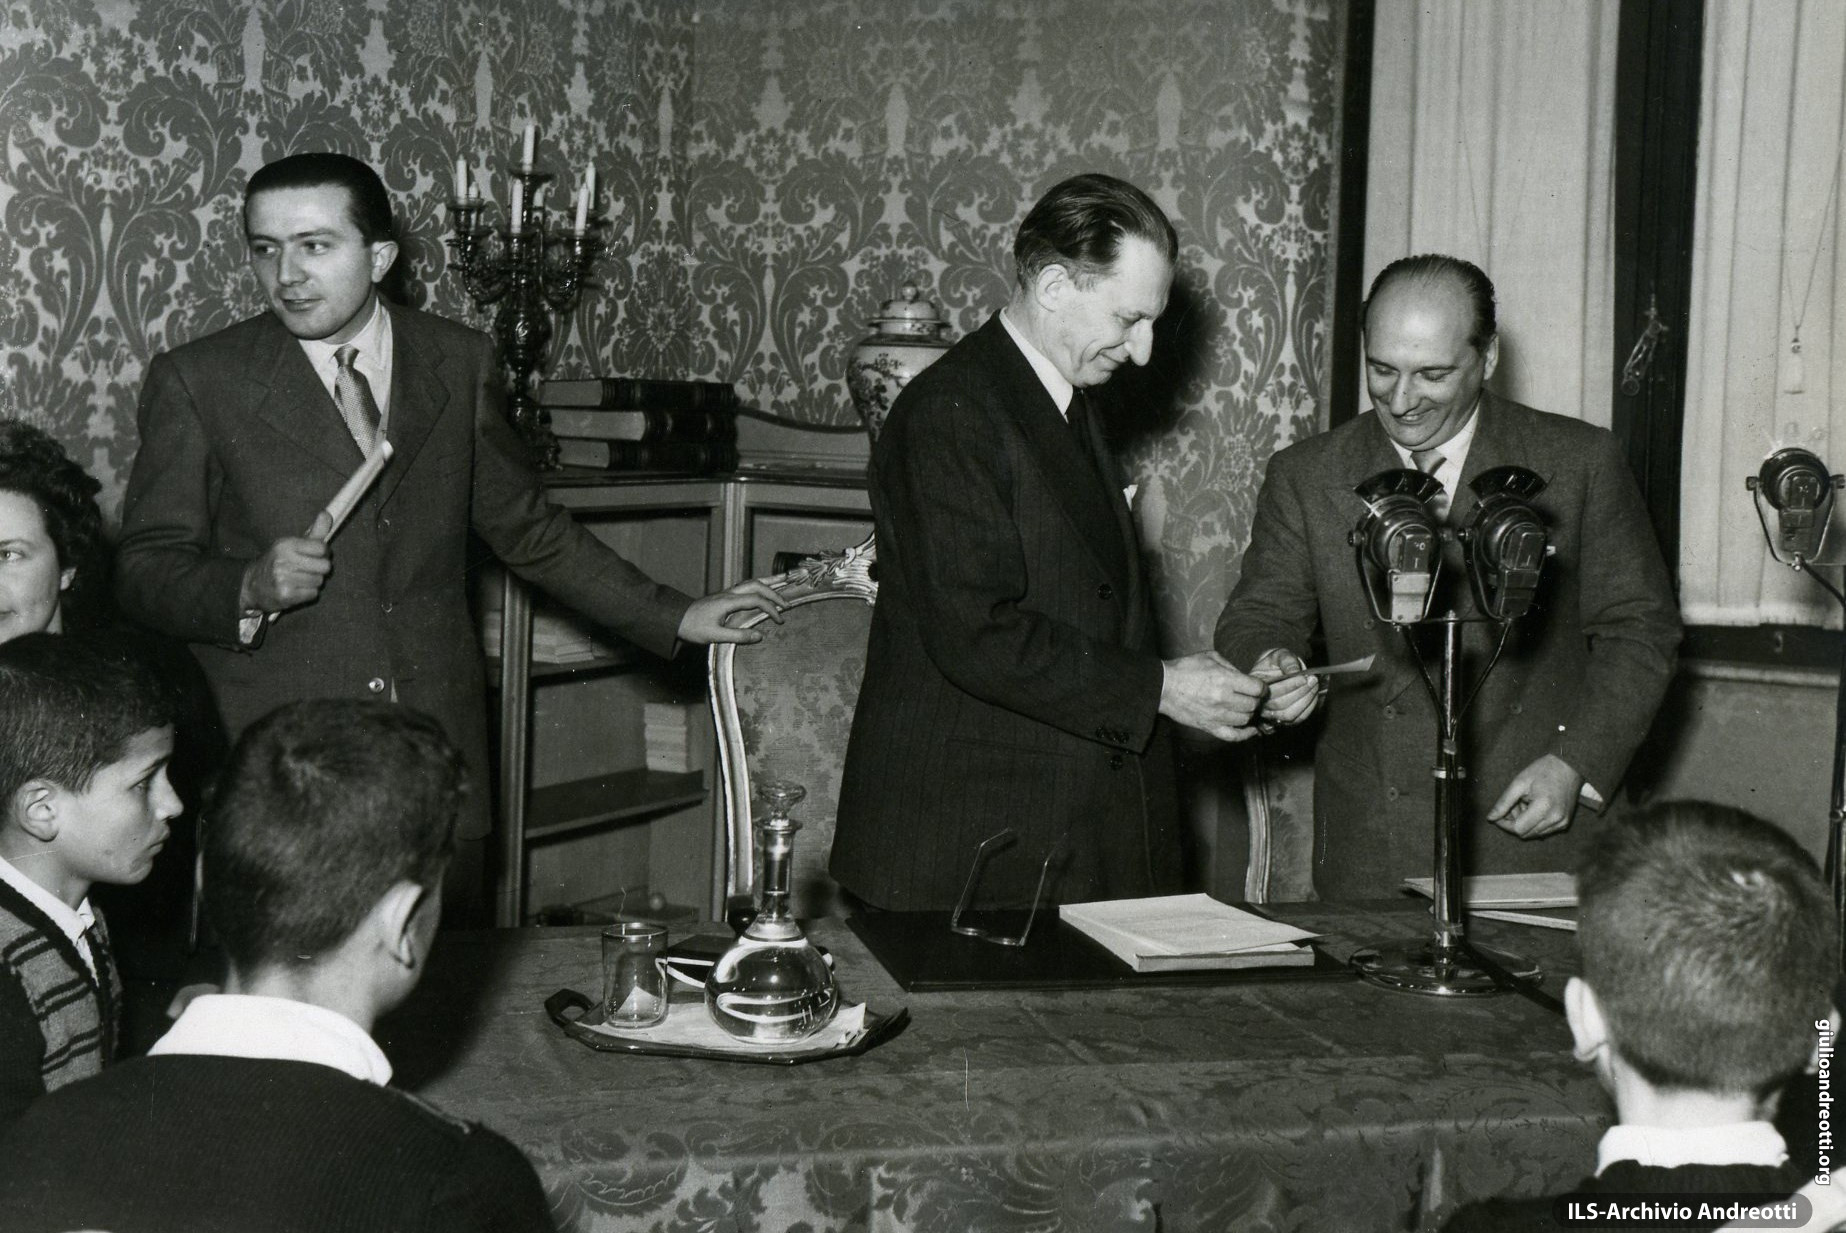 Andreotti con De Gasperi ad una trasmissione radiofonica.